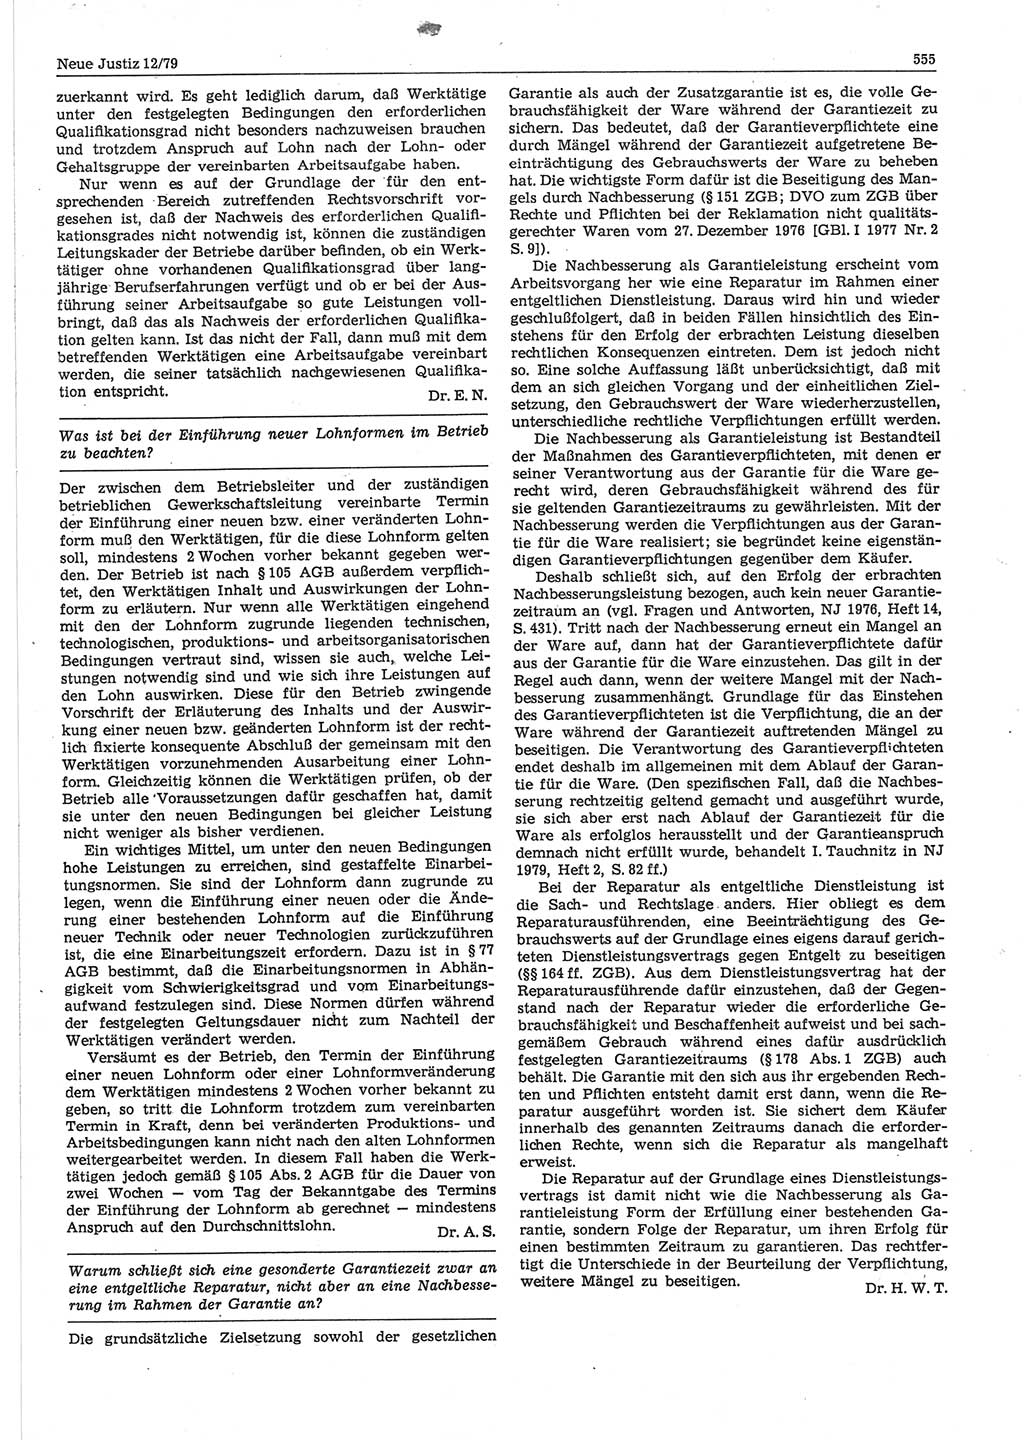 Neue Justiz (NJ), Zeitschrift für sozialistisches Recht und Gesetzlichkeit [Deutsche Demokratische Republik (DDR)], 33. Jahrgang 1979, Seite 555 (NJ DDR 1979, S. 555)